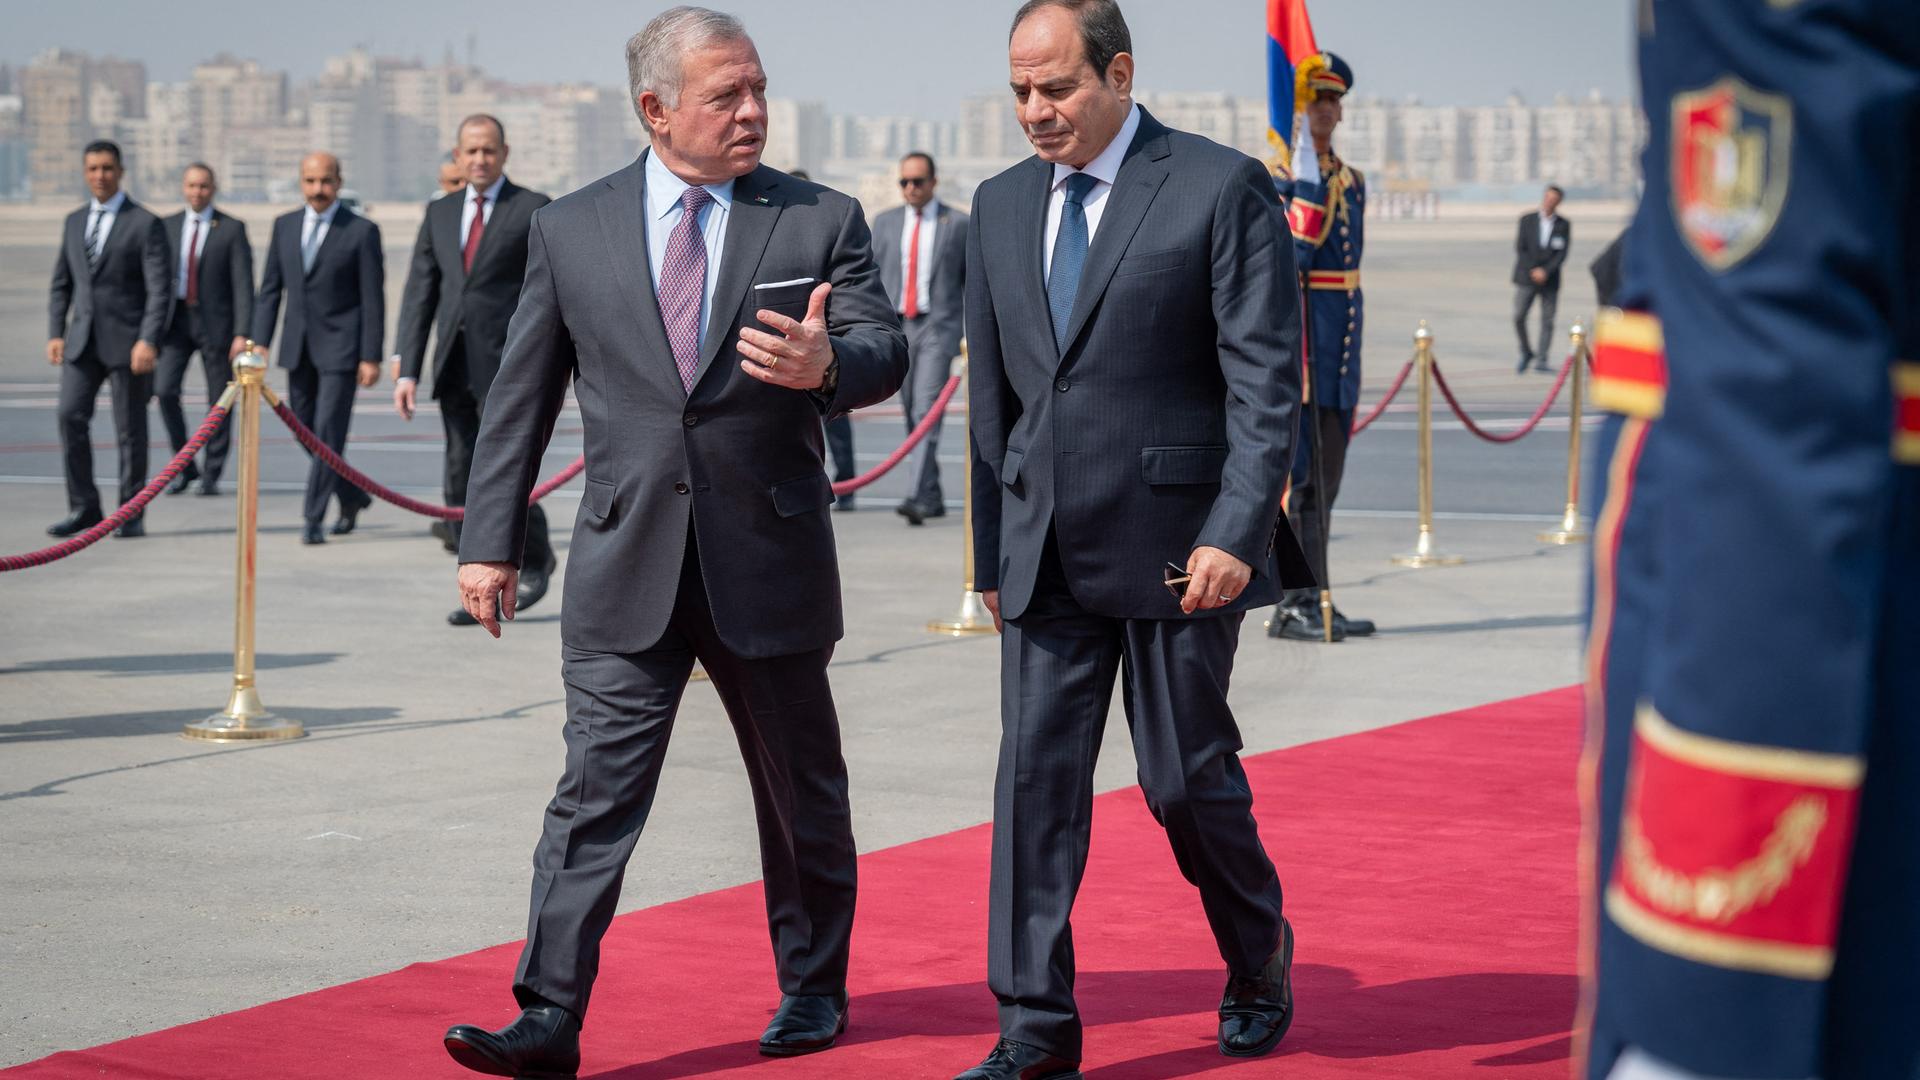 Der jordanische König Abdullah und der ägyptische Präsident al-Sisi schreiten über einen roten Teppich.